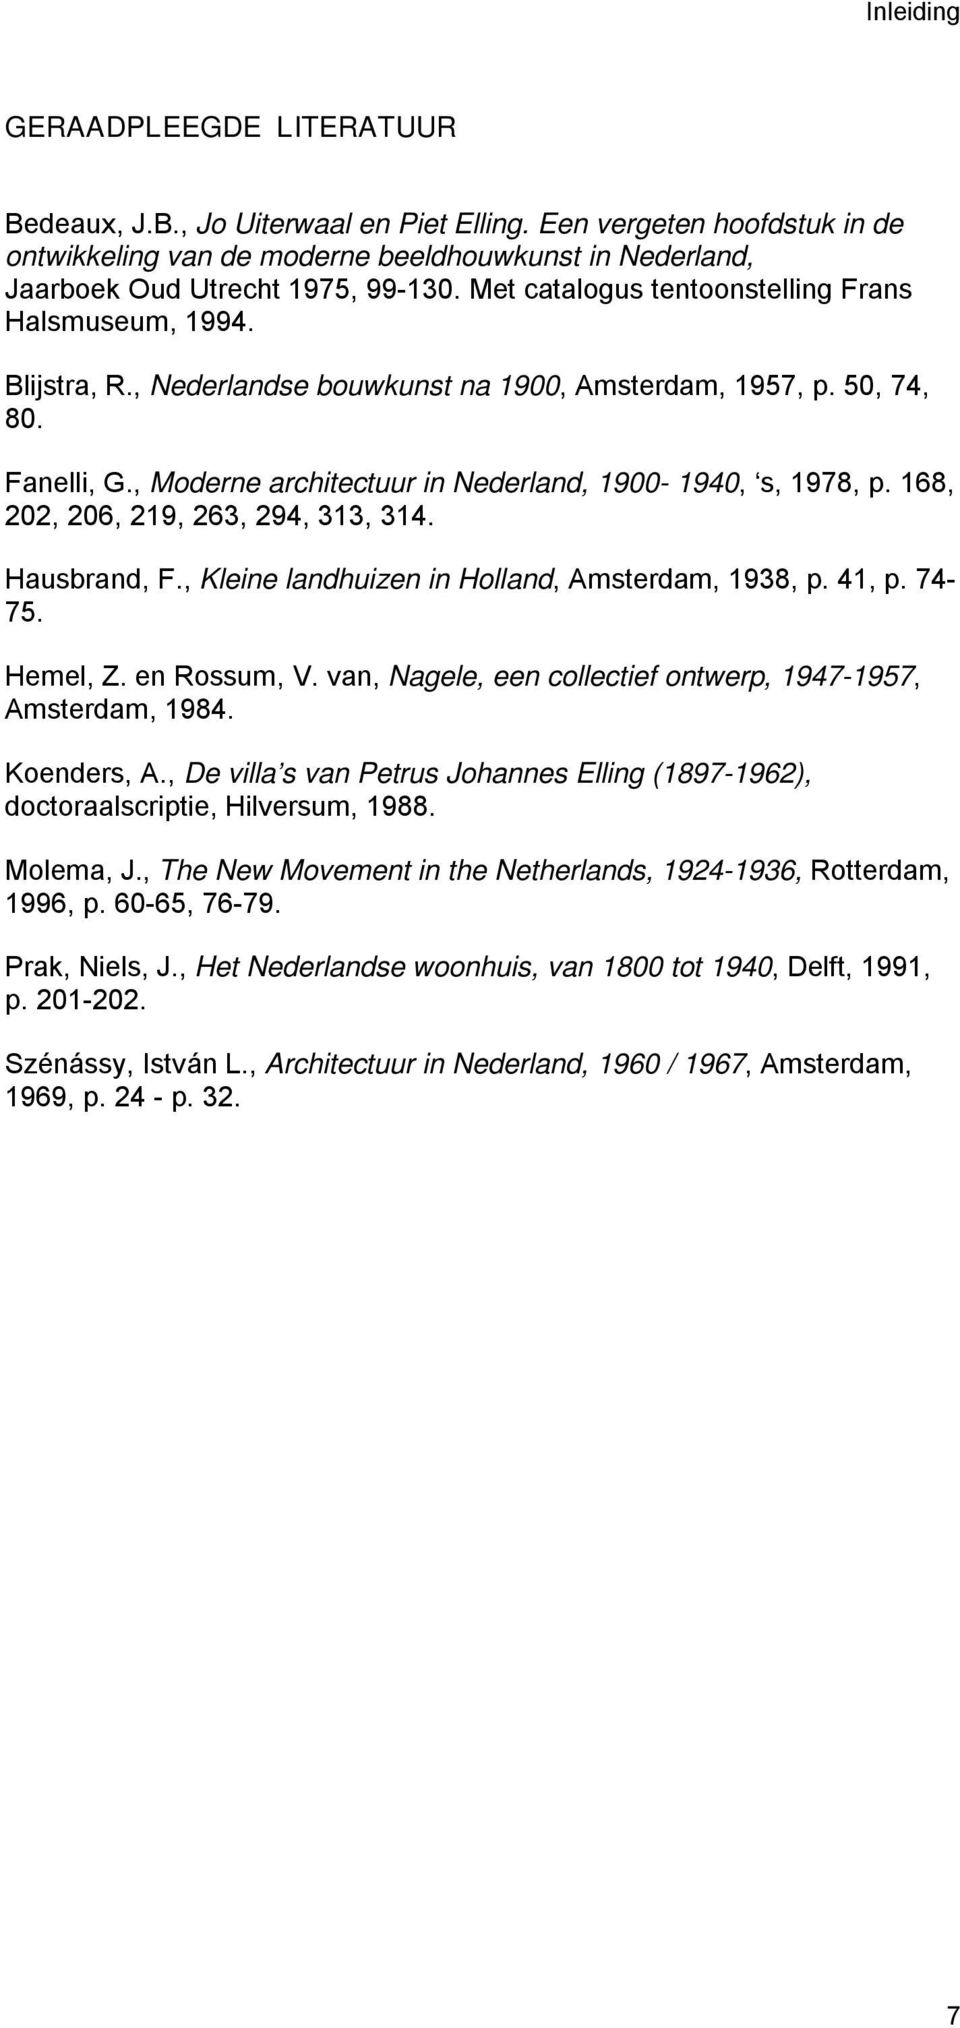 , Moderne architectuur in Nederland, 1900-1940, s, 1978, p. 168, 202, 206, 219, 263, 294, 313, 314. Hausbrand, F., Kleine landhuizen in Holland, Amsterdam, 1938, p. 41, p. 74-75. Hemel, Z.